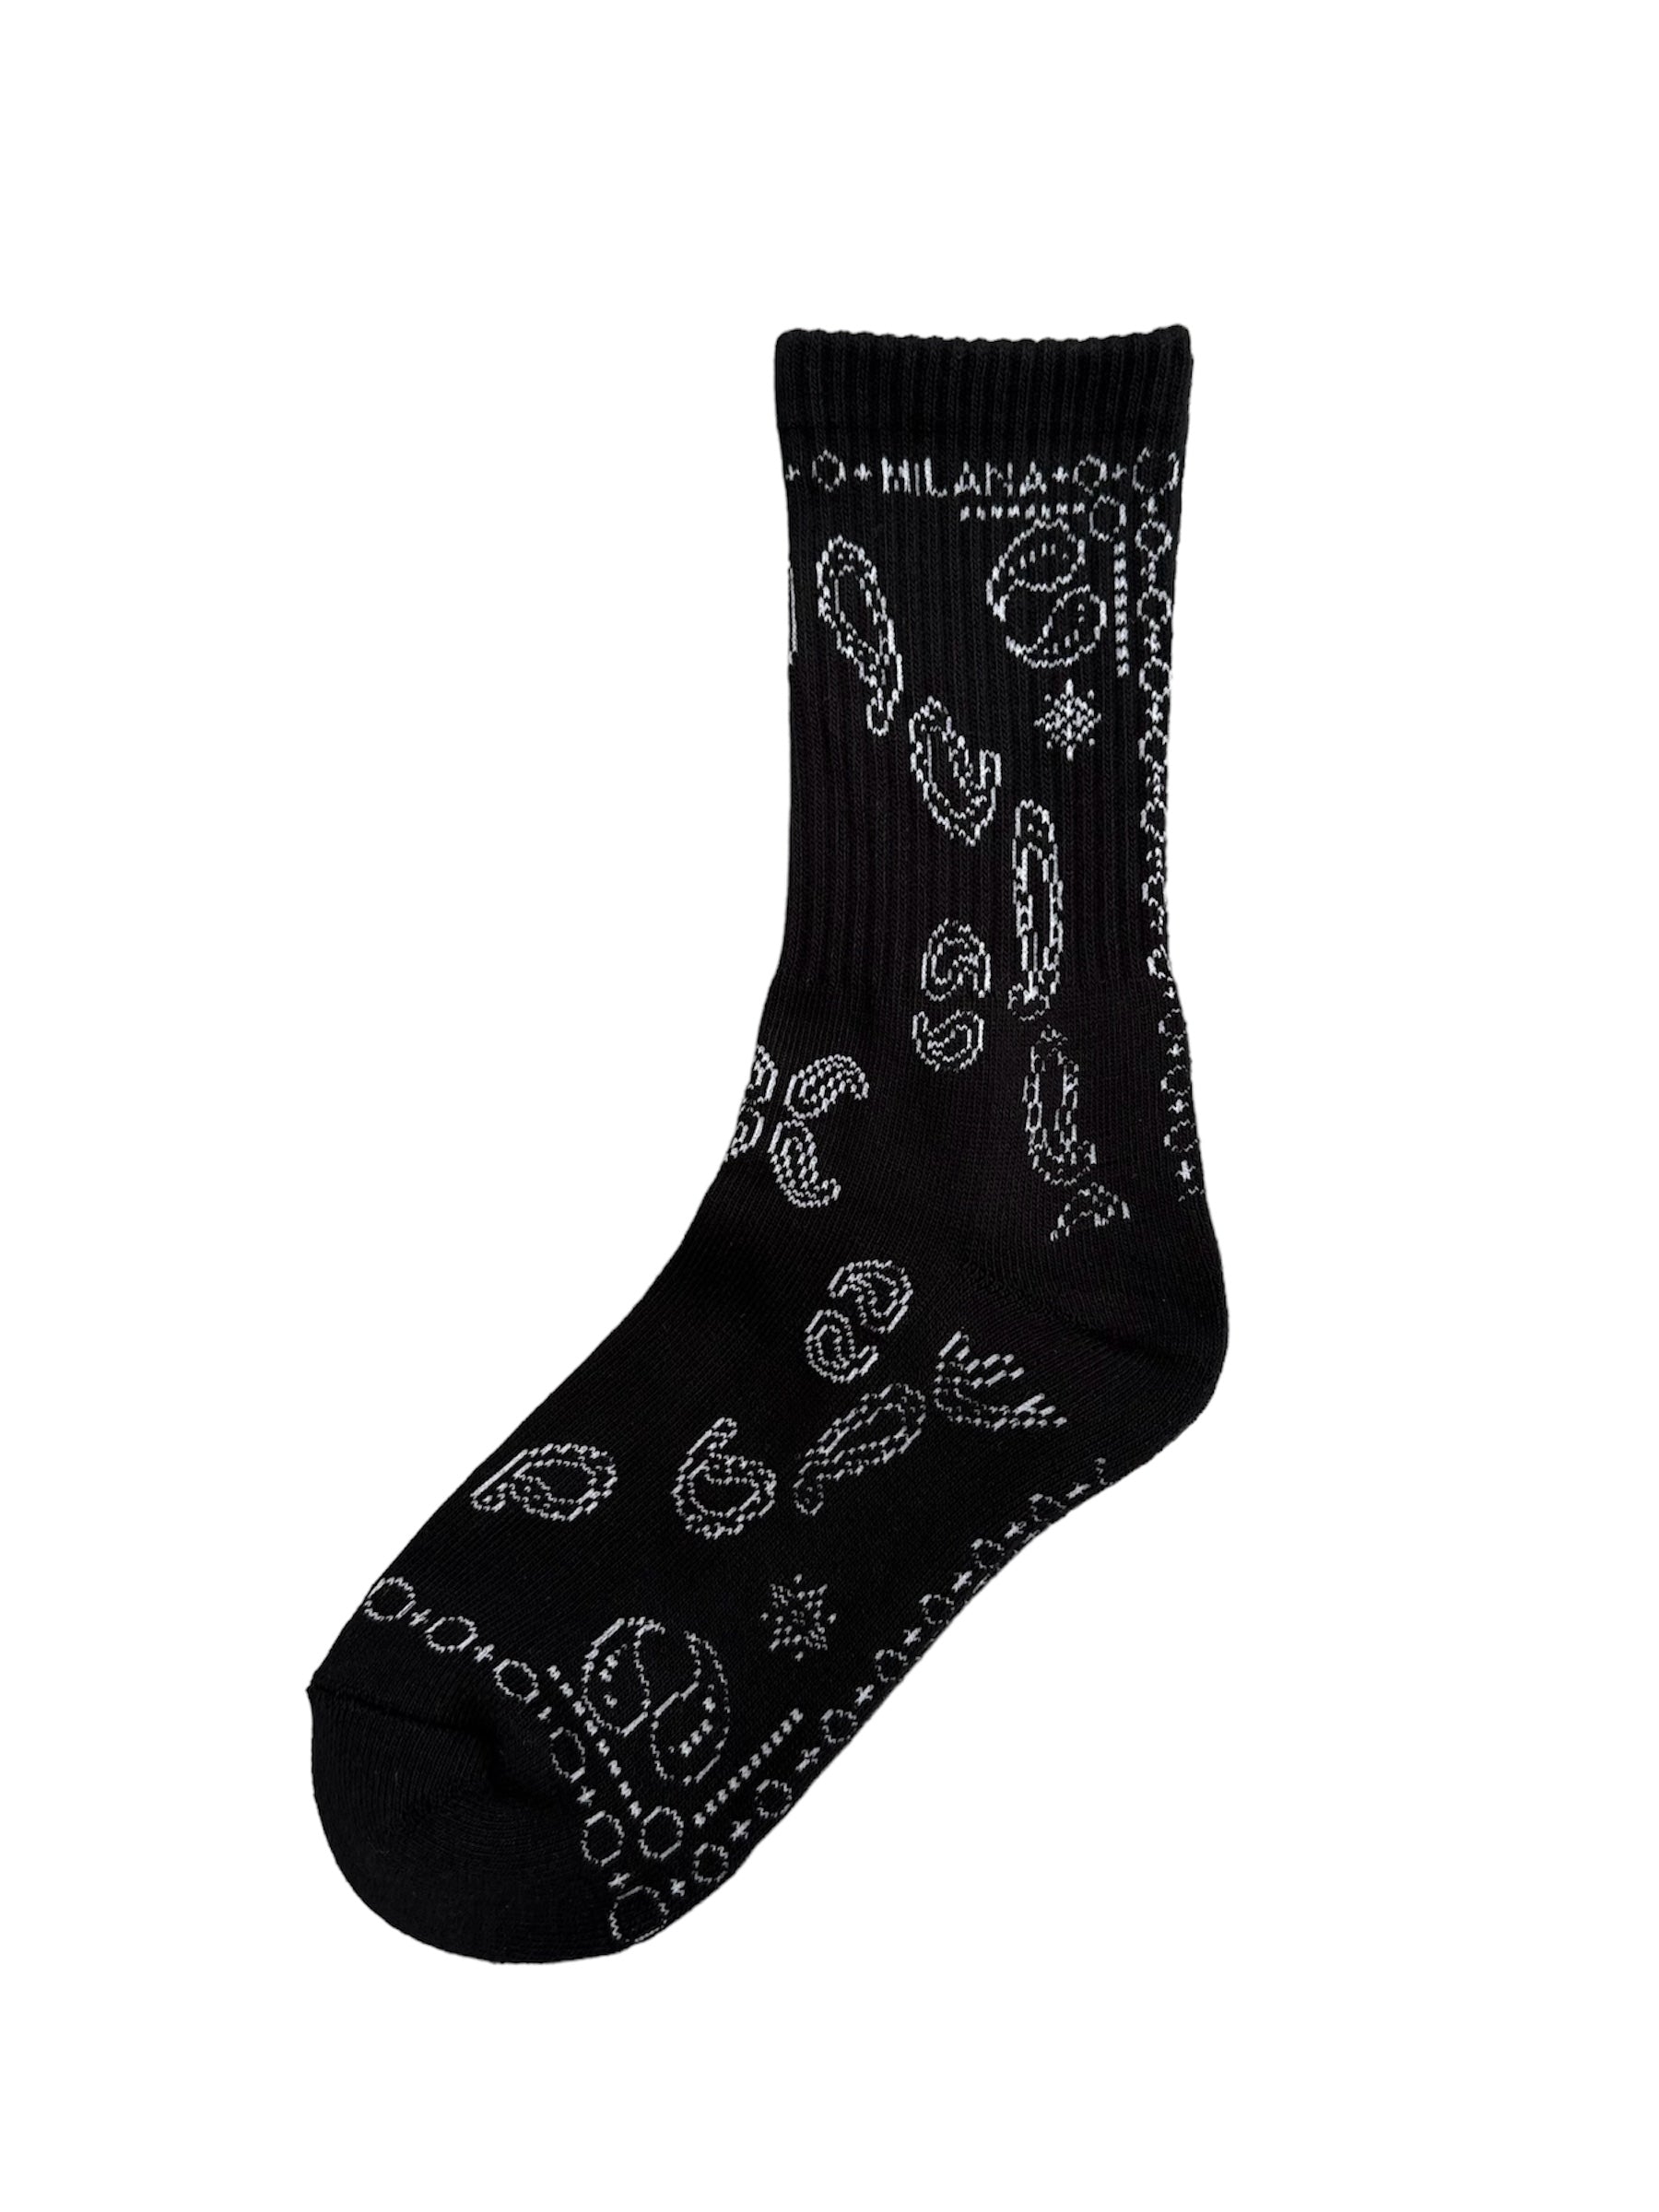 Black Paisley Socks.